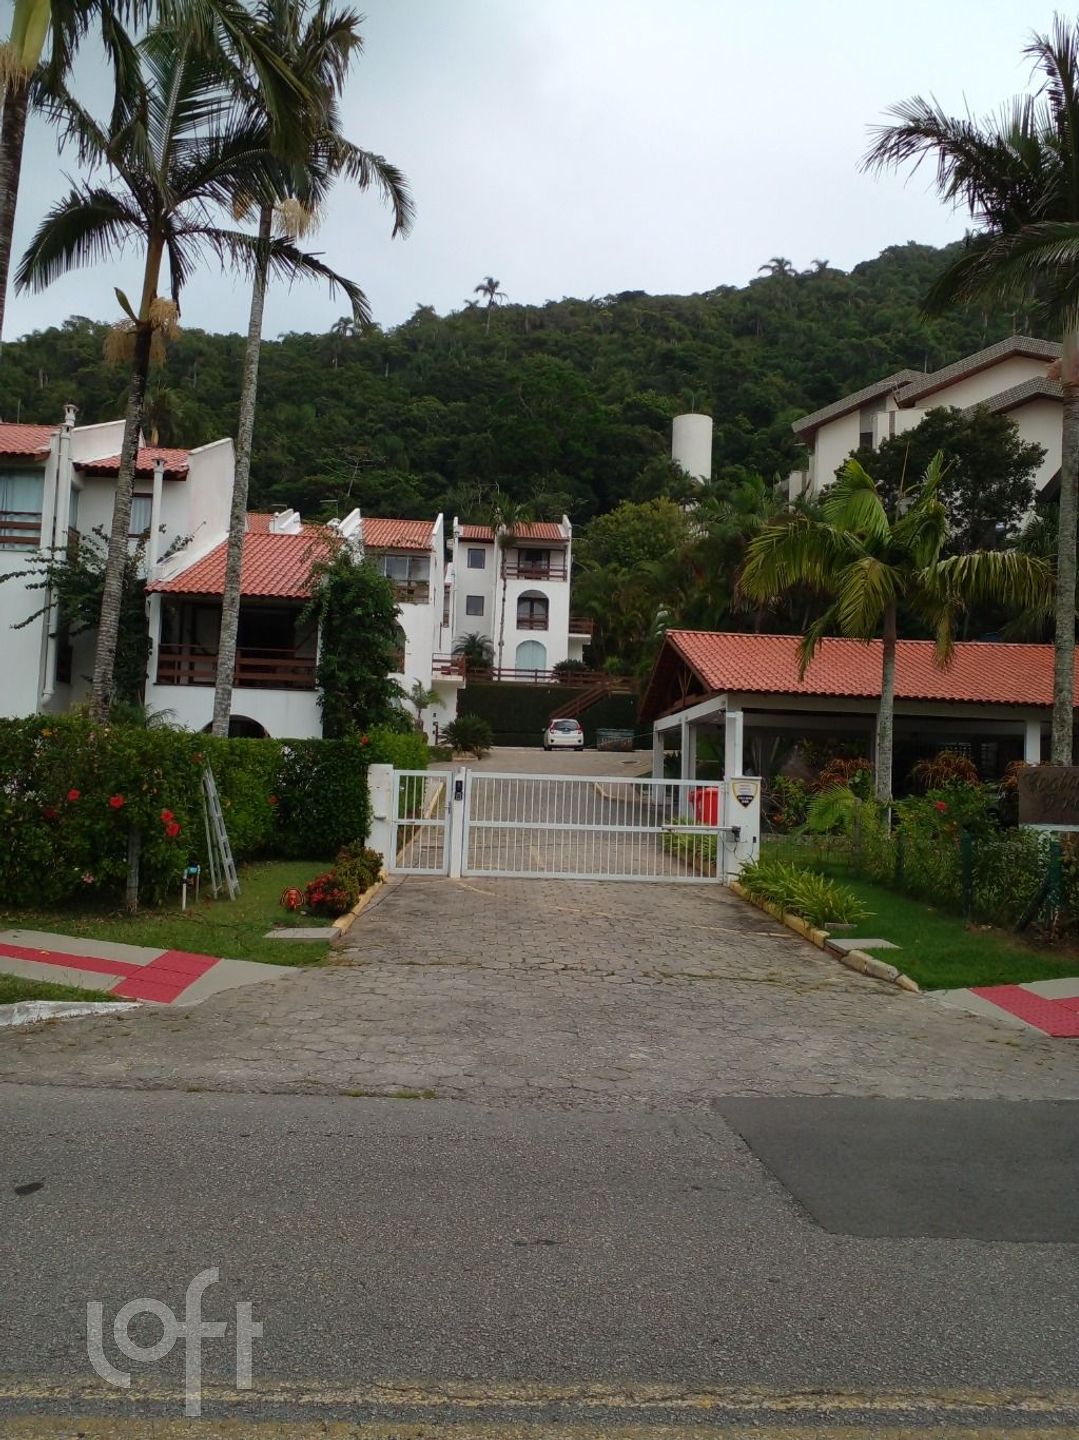 VENDA &#8211; Apartamento de 2 quartos no bairro Praia Brava, Florianópolis &#8211; PU92i45s